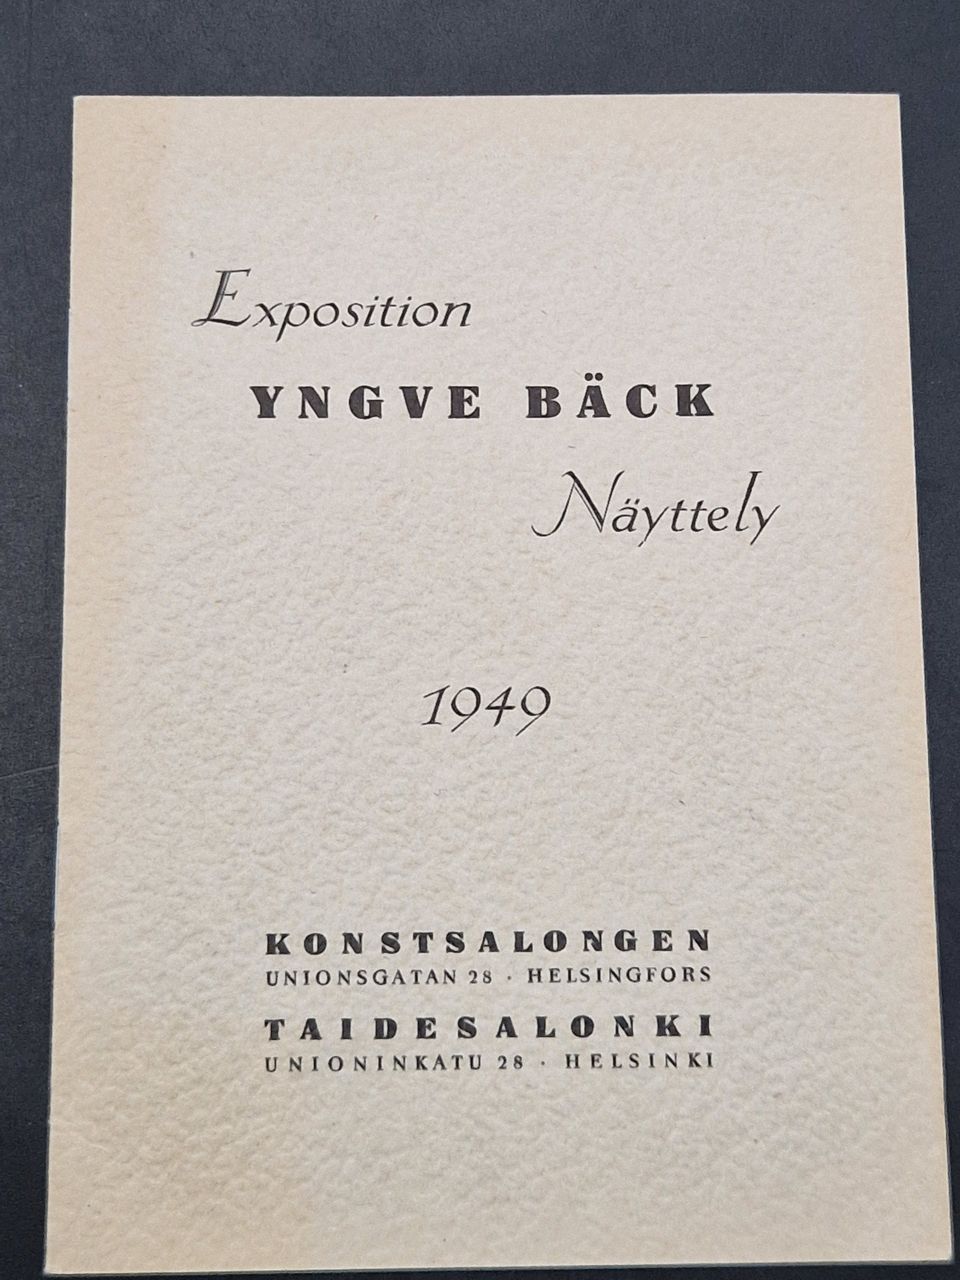 Yngve Bäck näyttelyluettelo * 1949 * taidesalonki